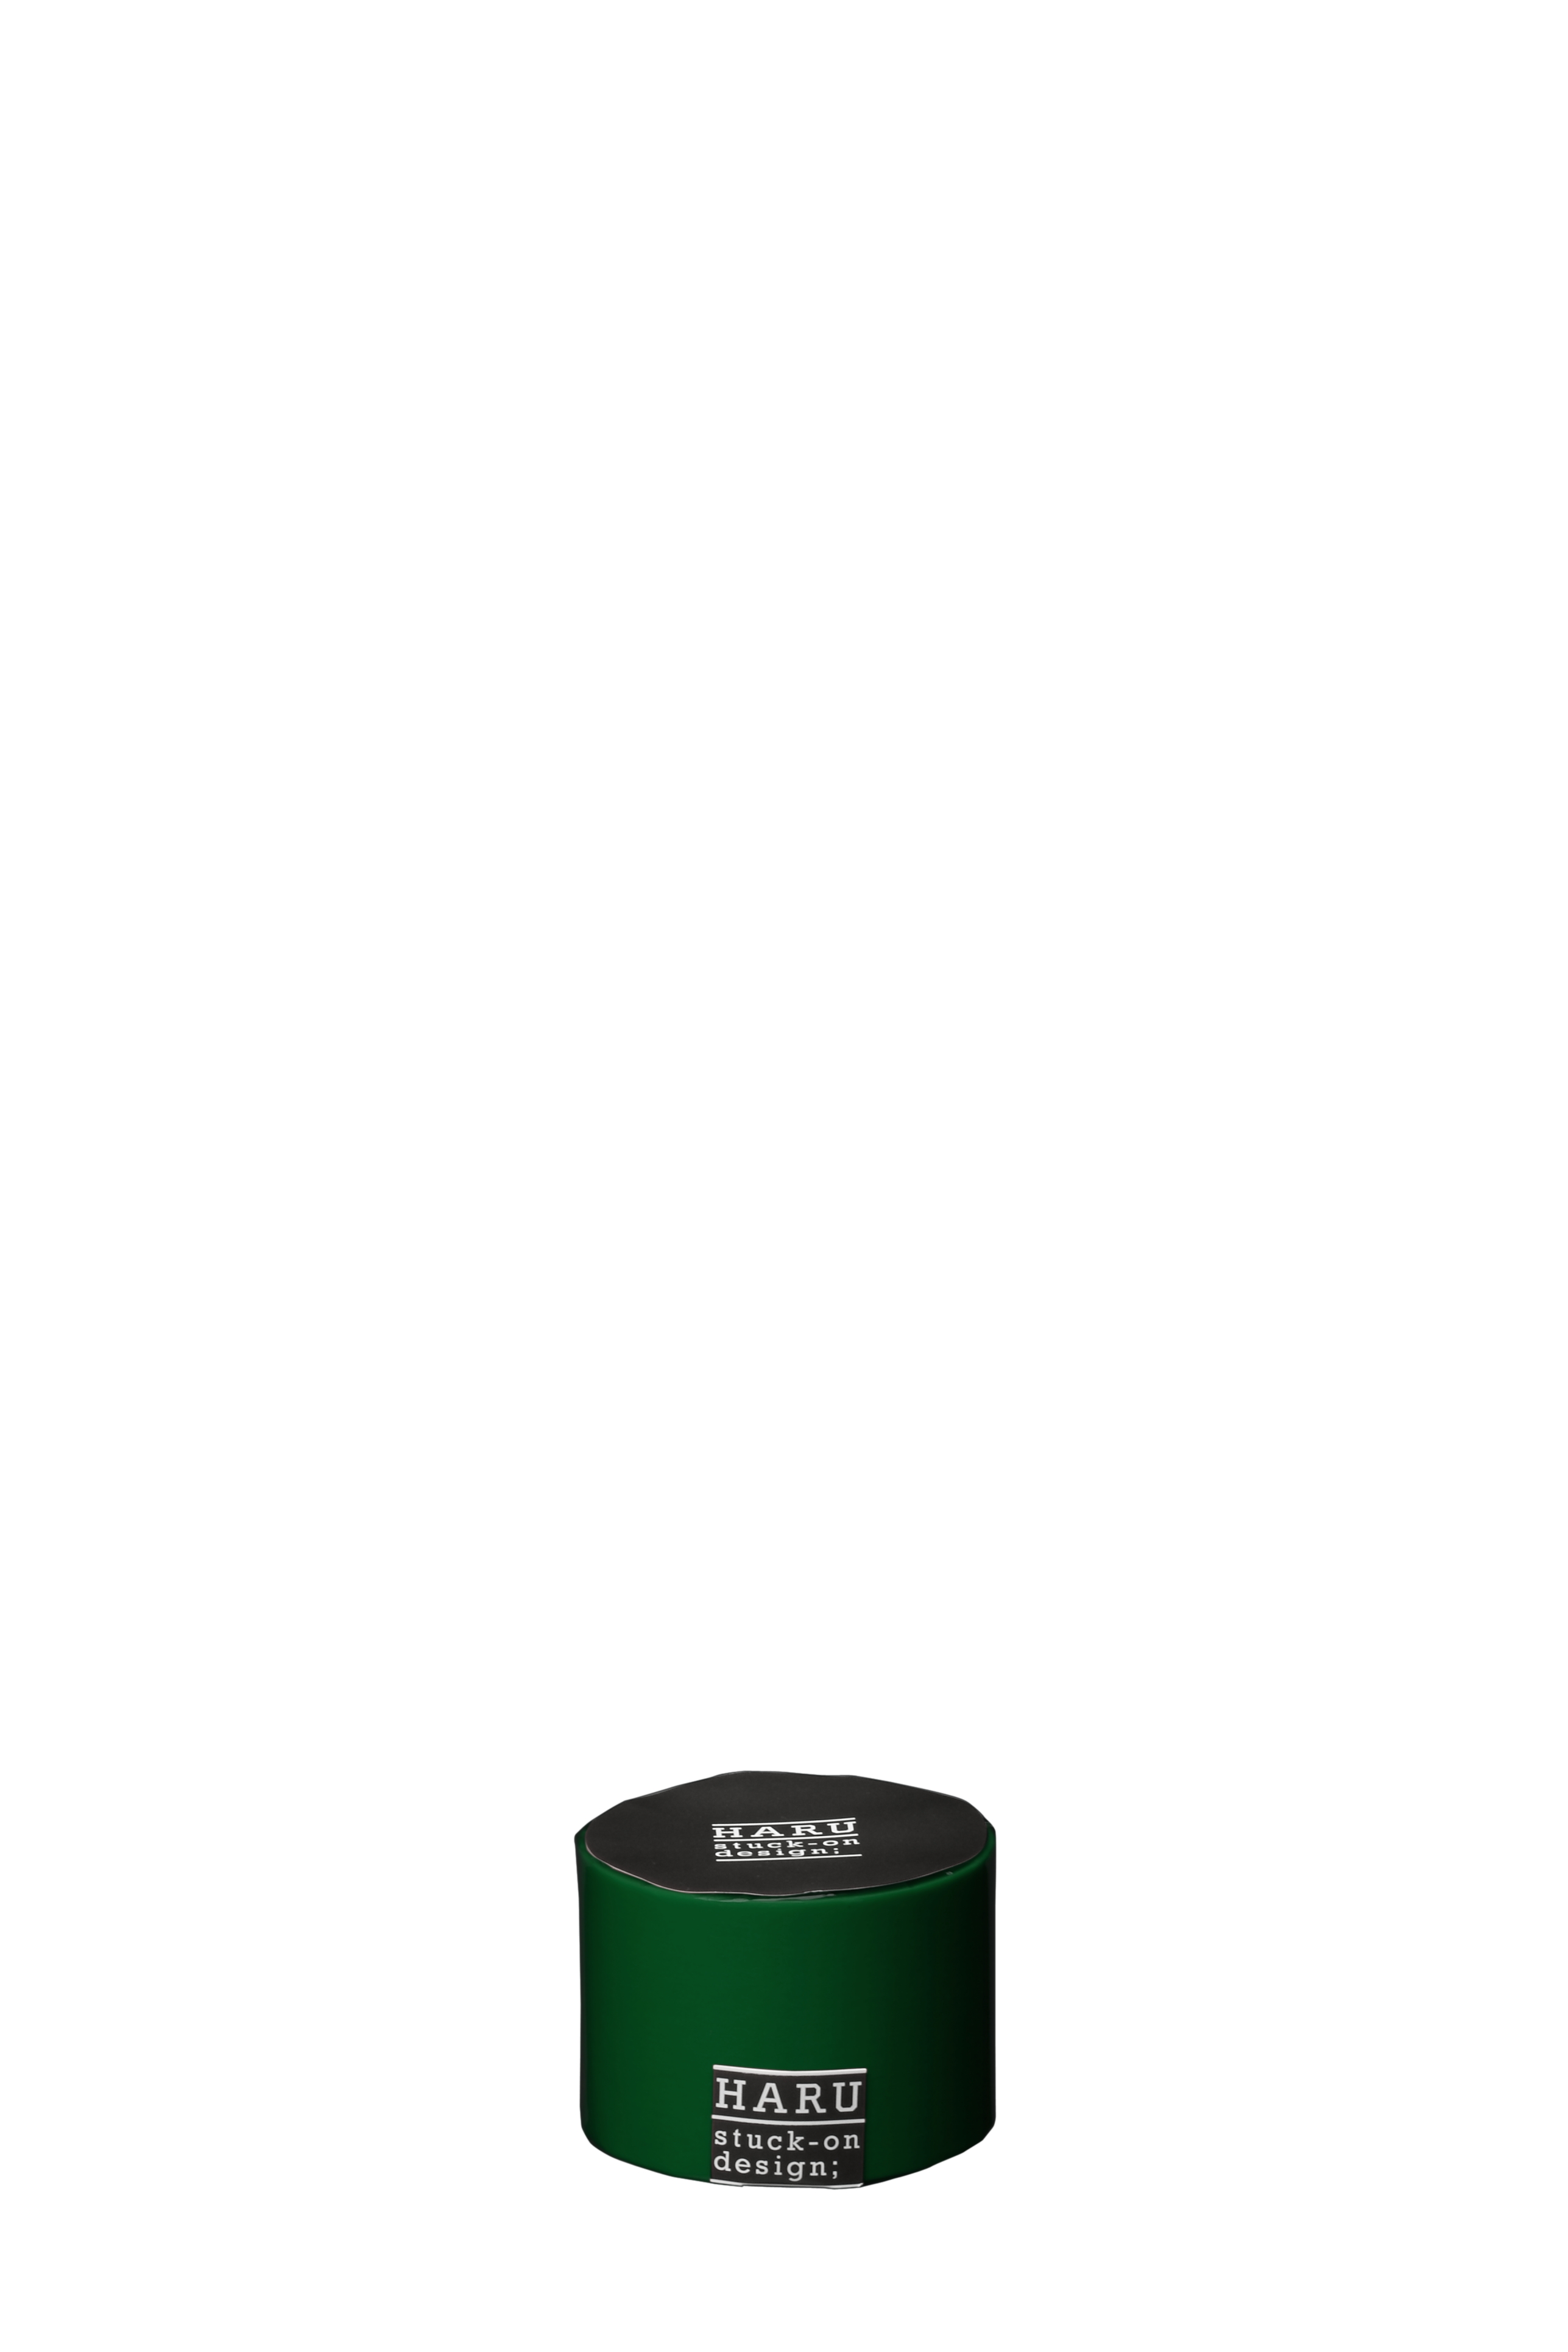 日本正規品 ニトムズ ハル 和紙テープ HARU FL05 WT 5010_F0850 50mm x 10m monte-kaolino.com